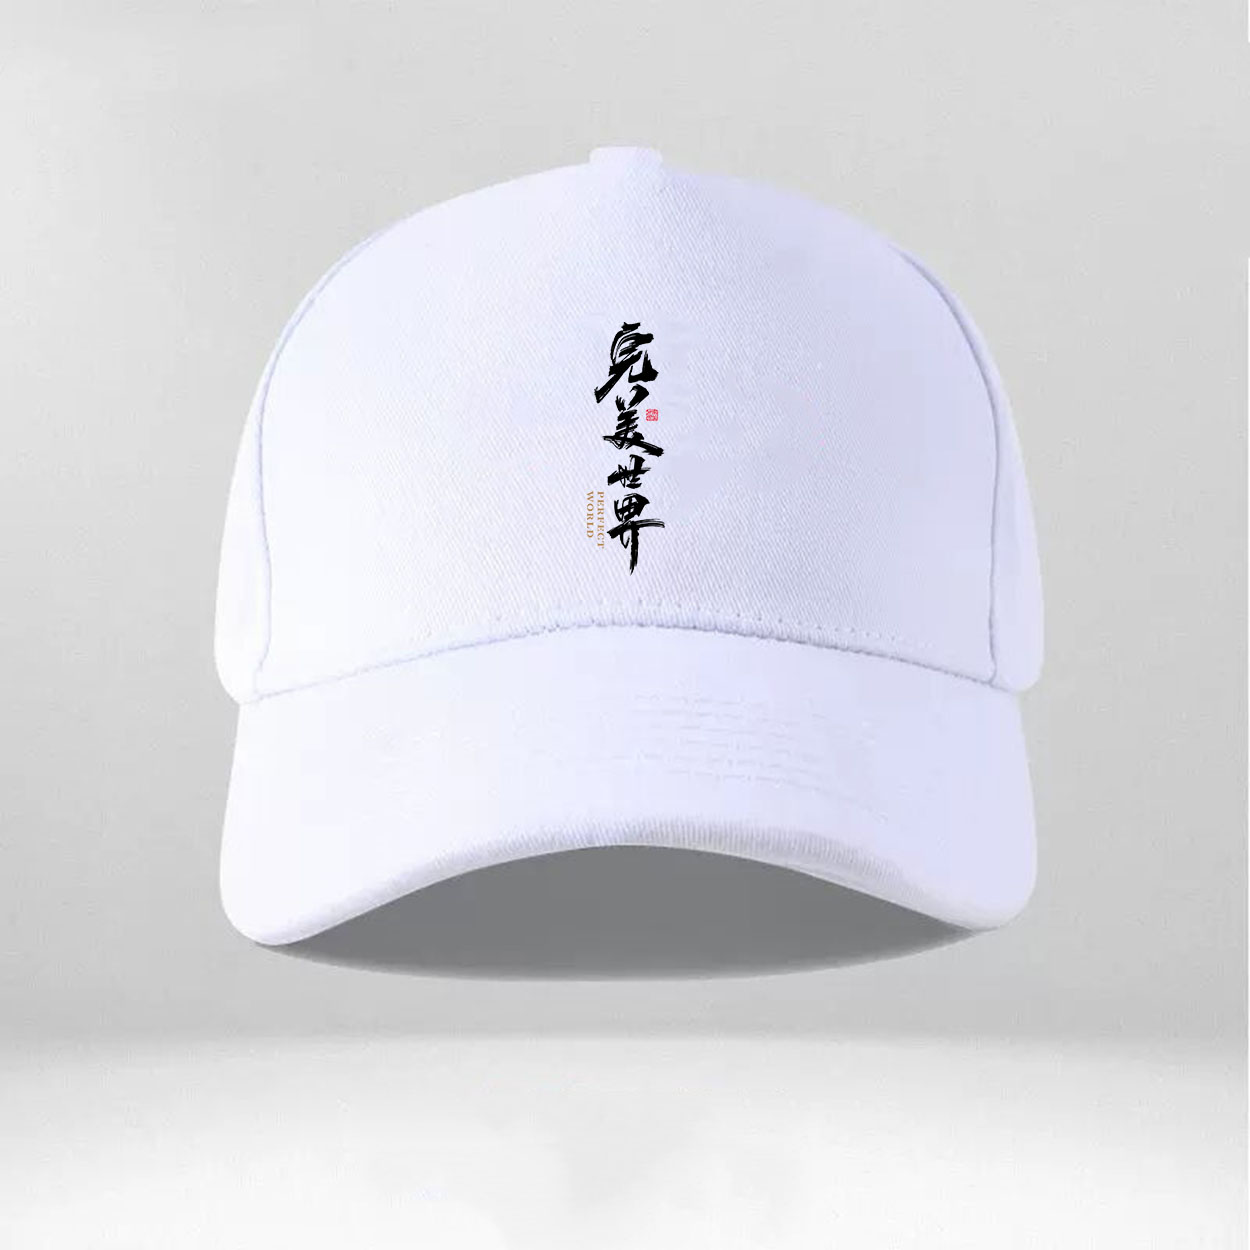 棒球帽遮阳帽动漫完美世界棒球帽韩版休闲帽子户外运动鸭舌帽